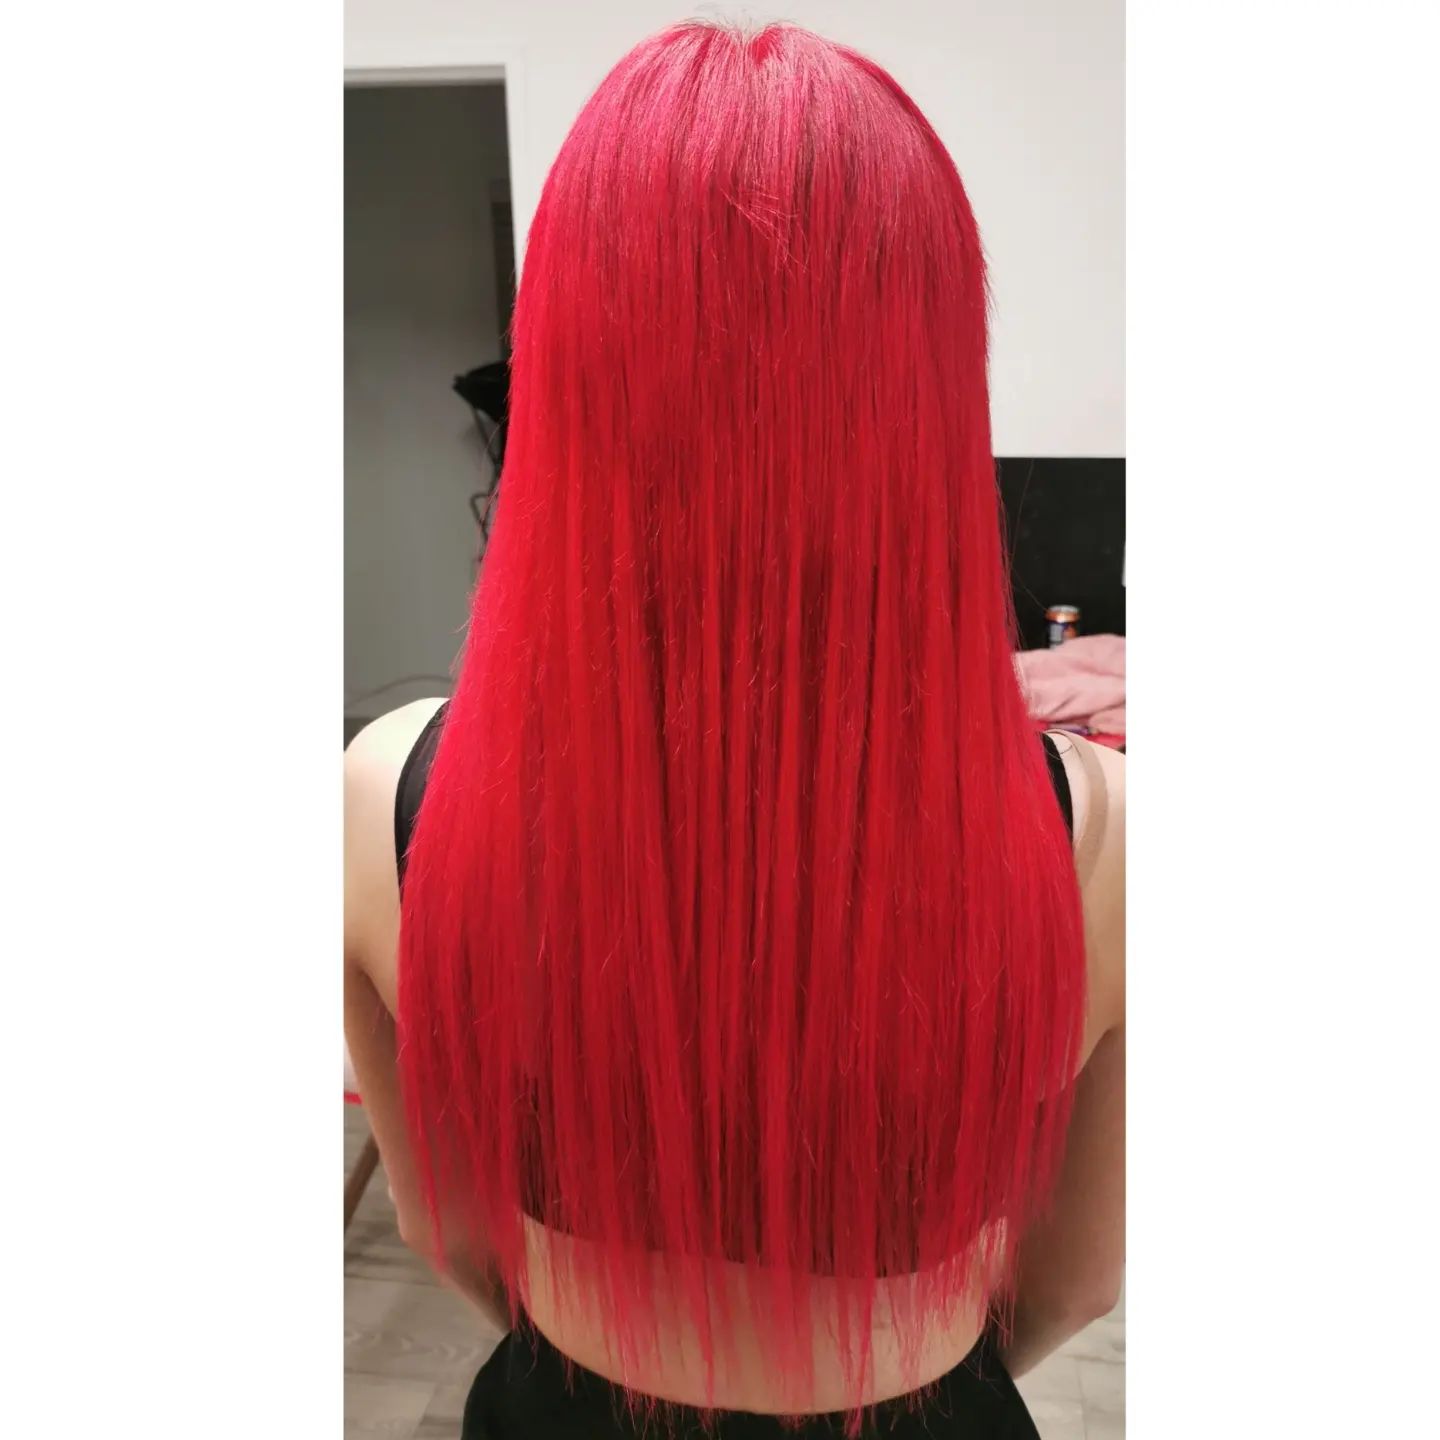 bright red hair color 161 Bright Red Hair Color | Bright red hair color for dark hair | Bright red hair color ideas Bright Red Hair Color